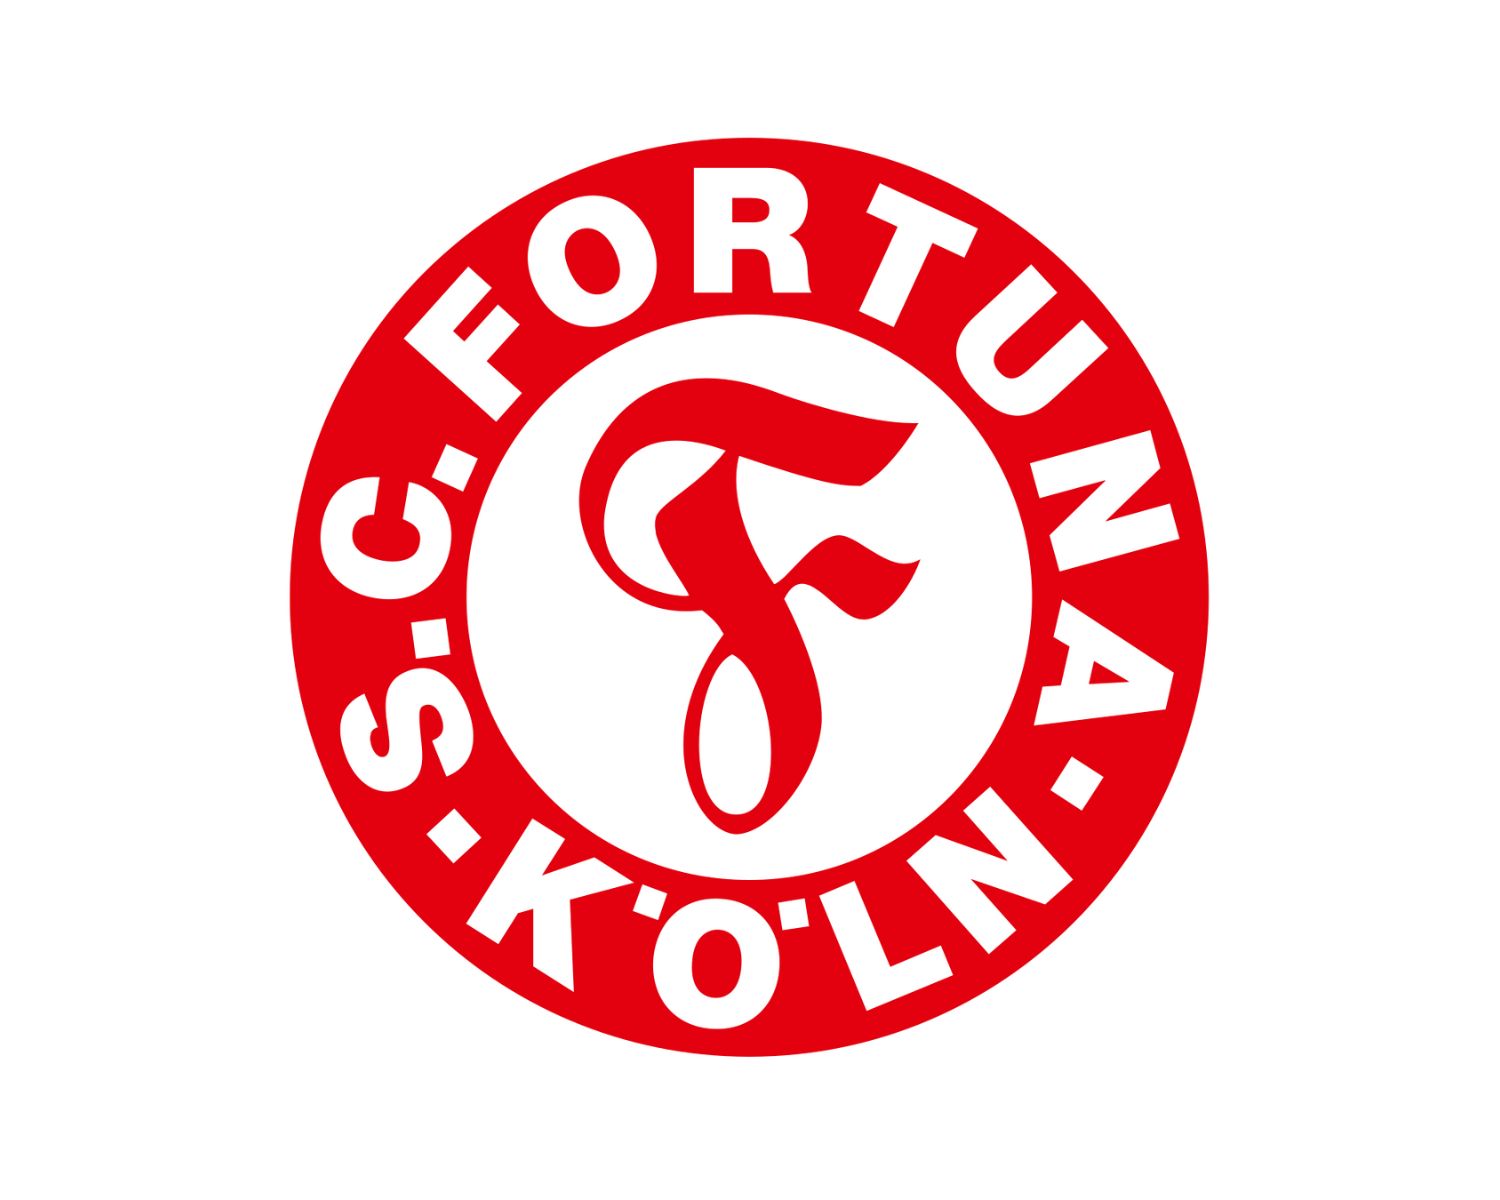 sc-fortuna-koln-21-football-club-facts